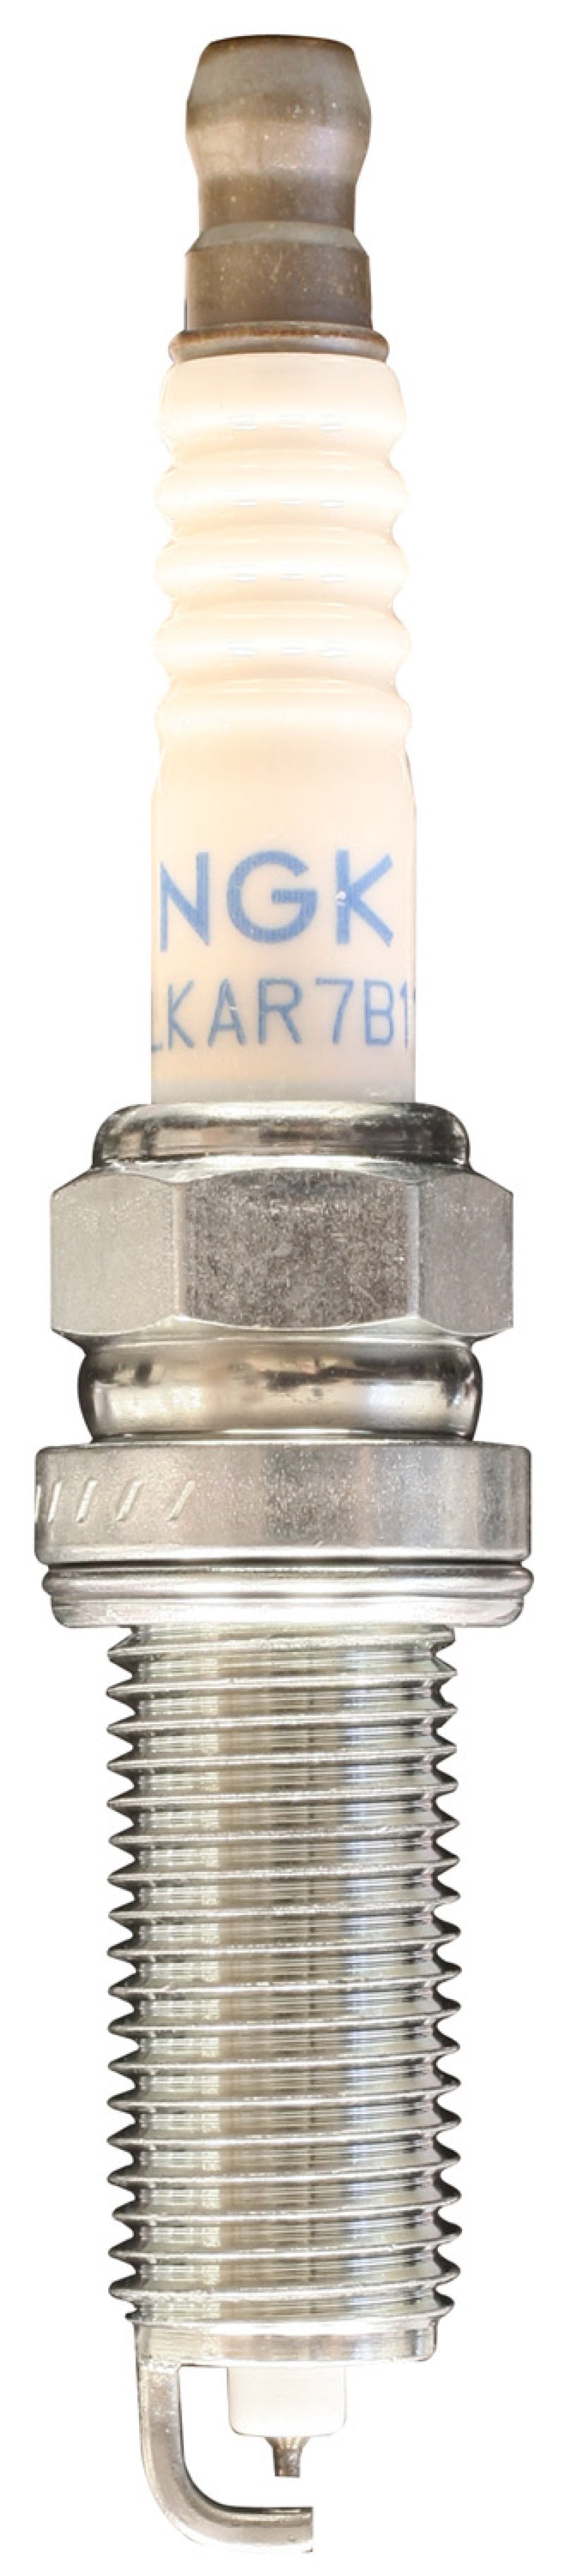 NGK Iridium/Platinum Spark Plug Box of 4 (ILKAR7B11) - eliteracefab.com